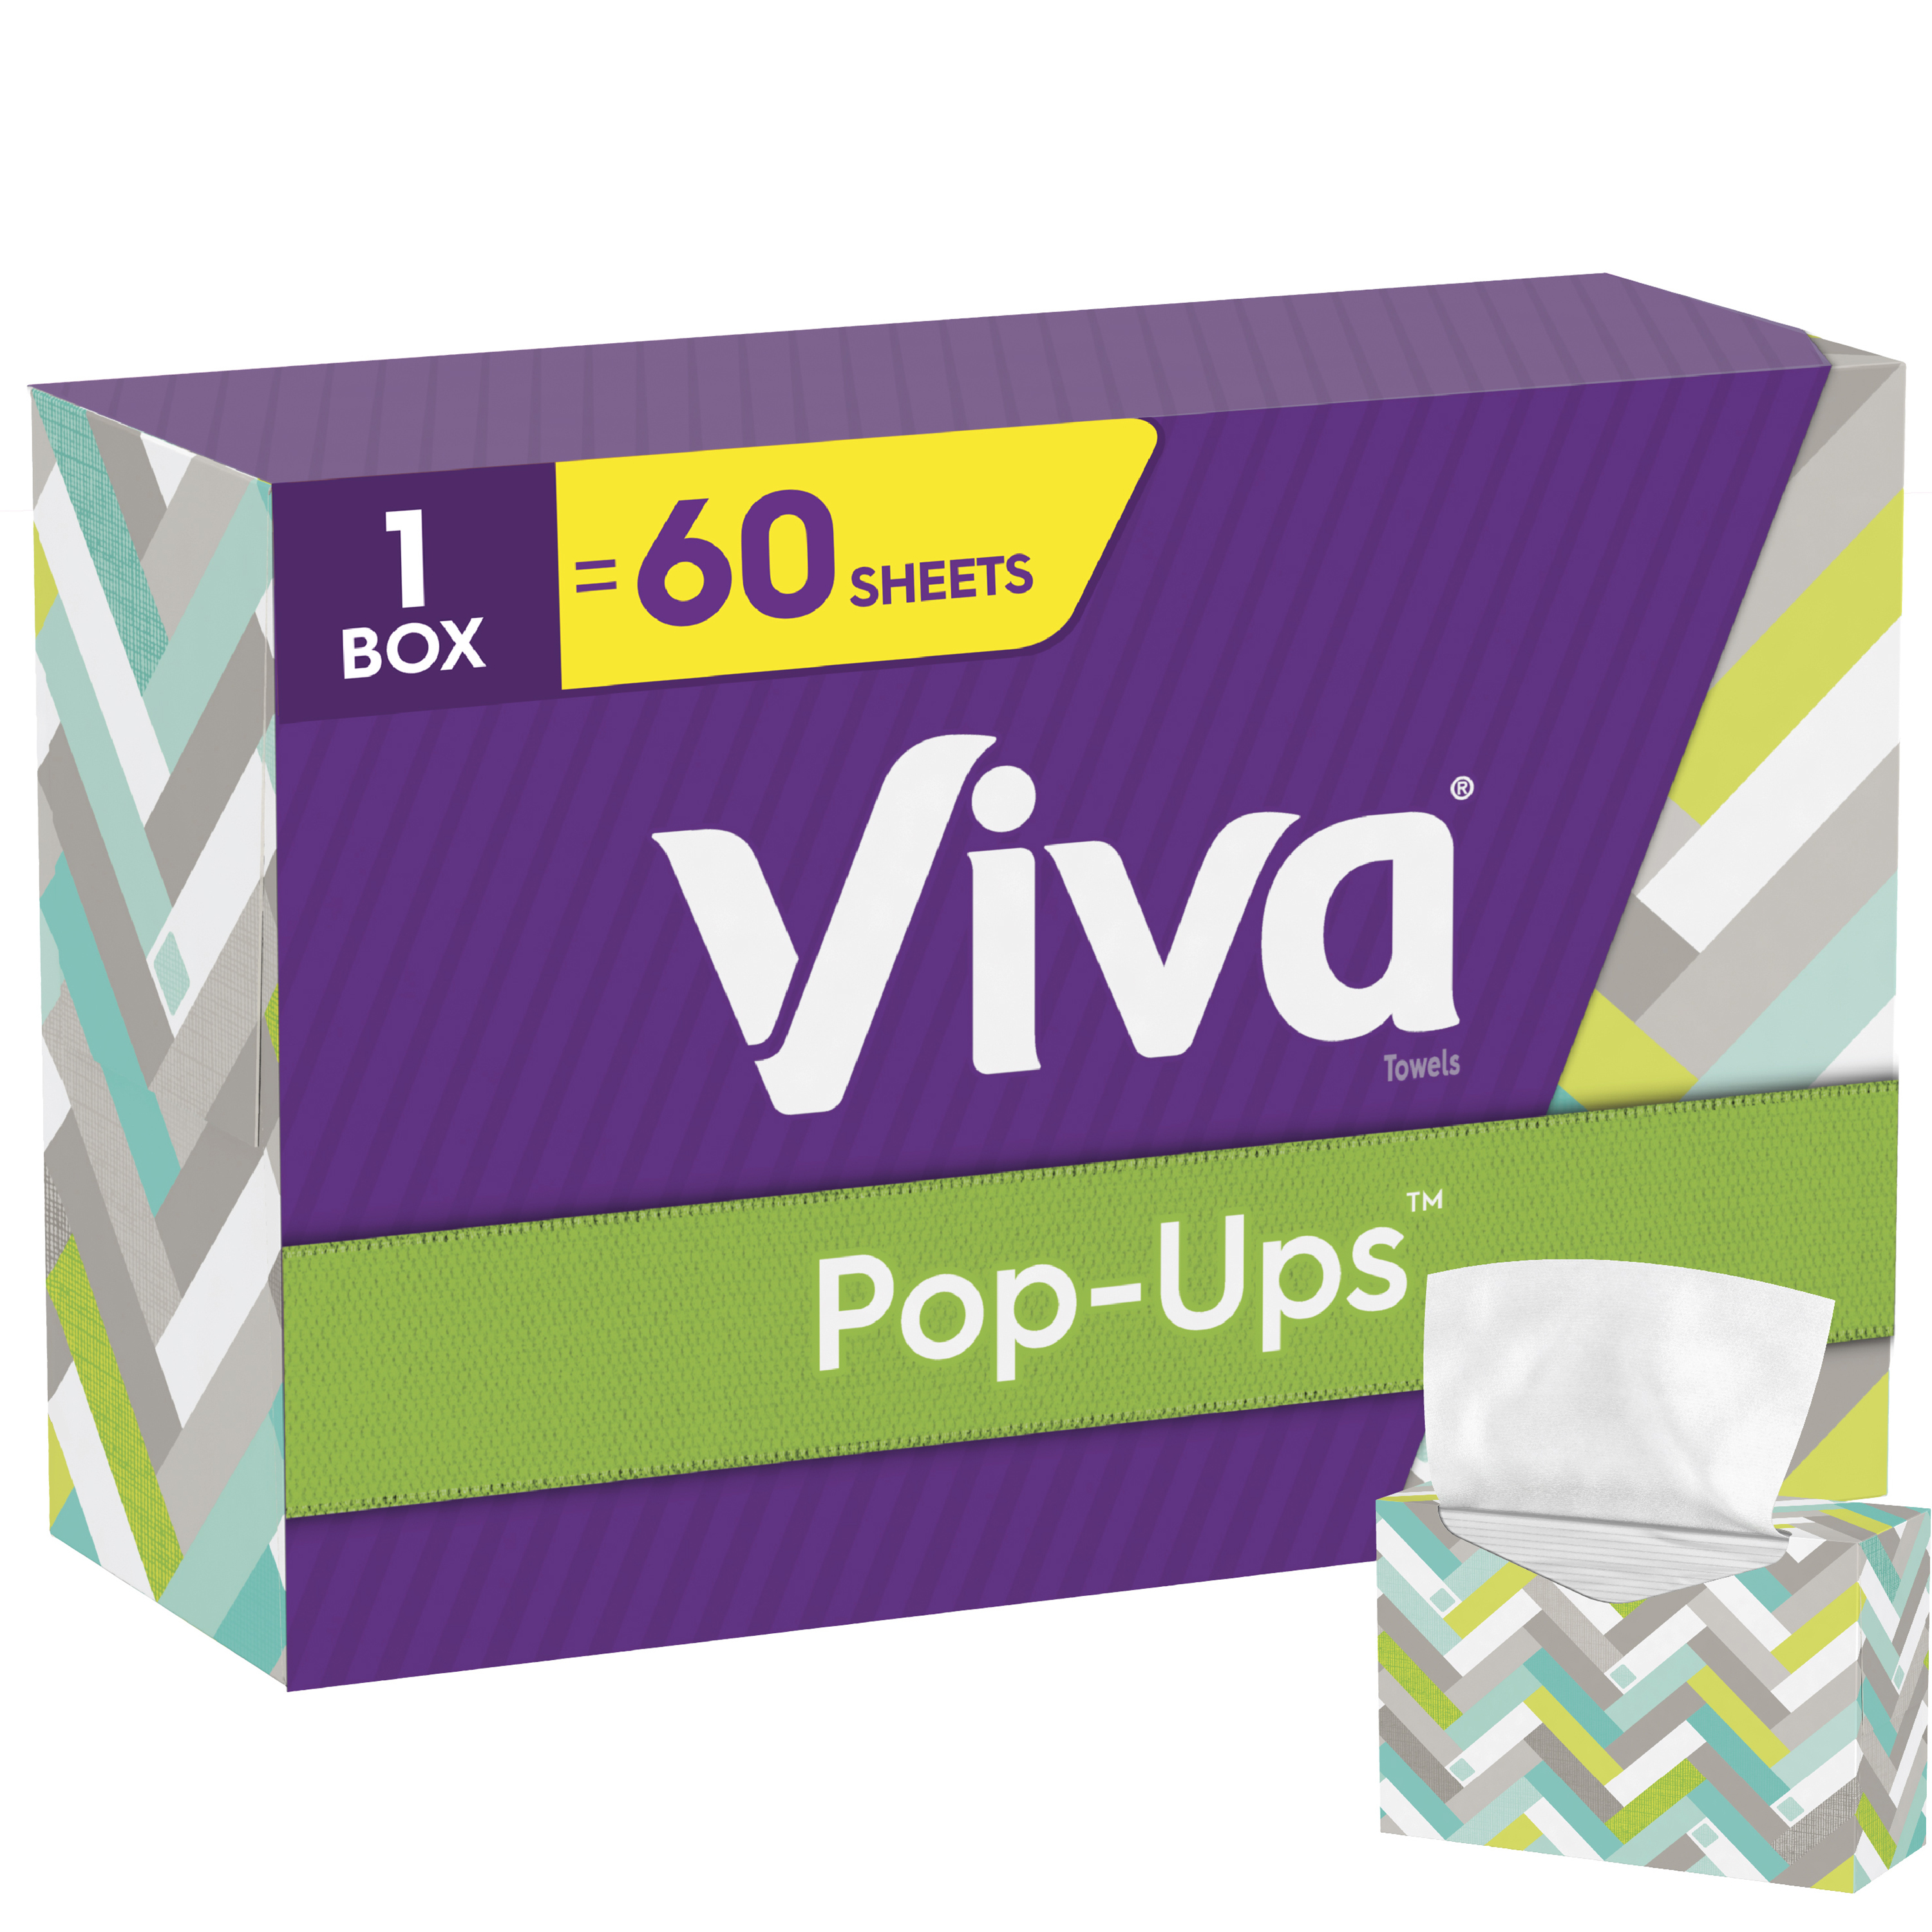 Viva Pop-Ups Paper Towel Dispenser, White, 60 Sheets - image 1 of 11